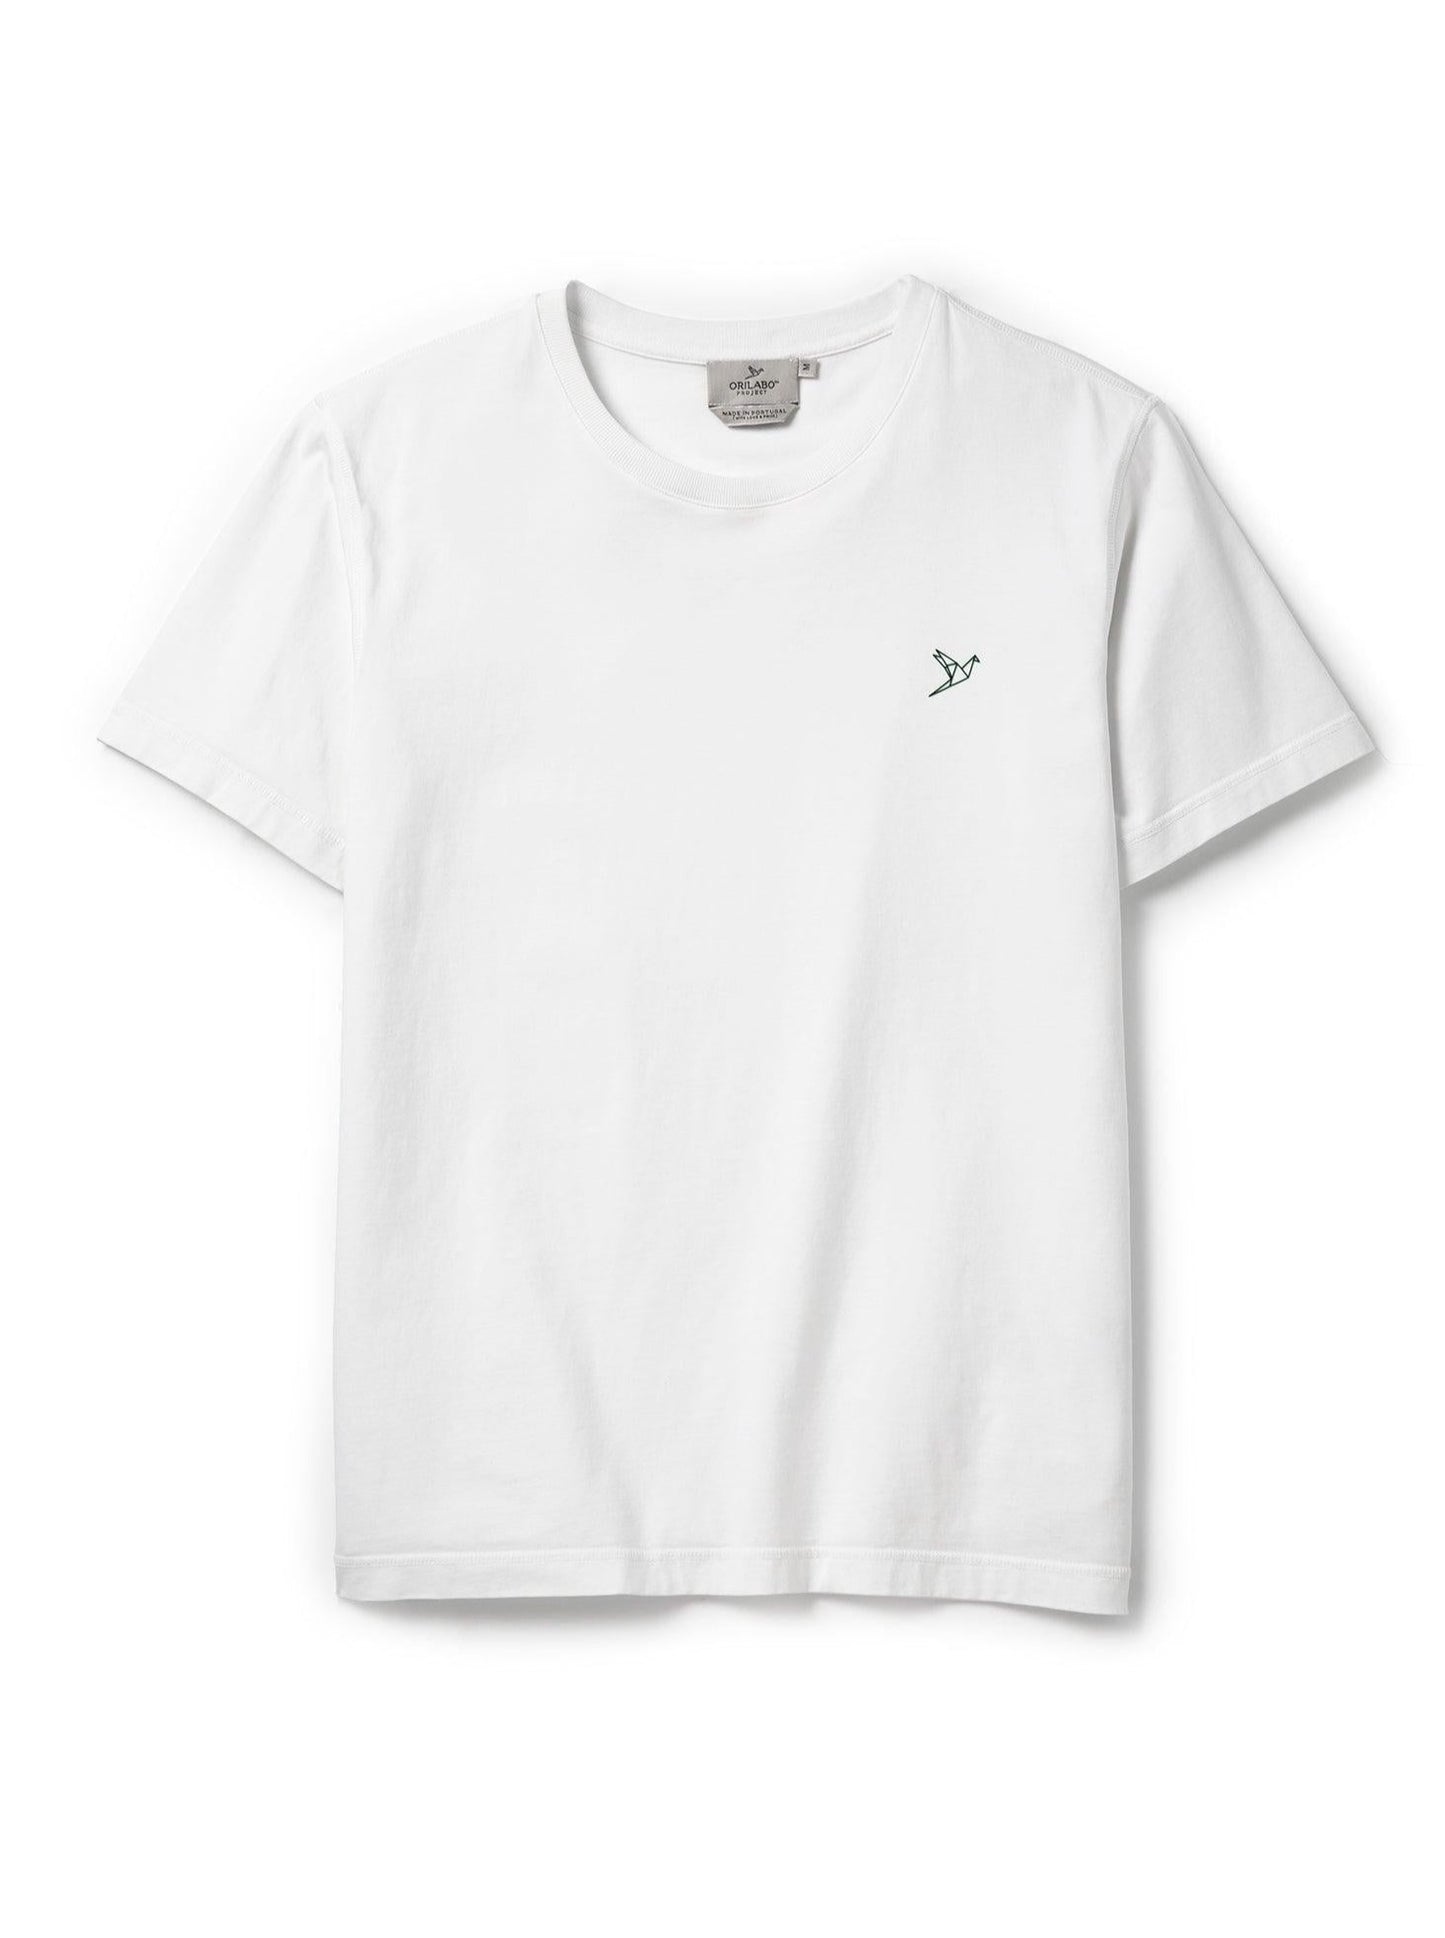 
                  
                    Men's Flying Head T-shirt - White - ORILABO Project
                  
                